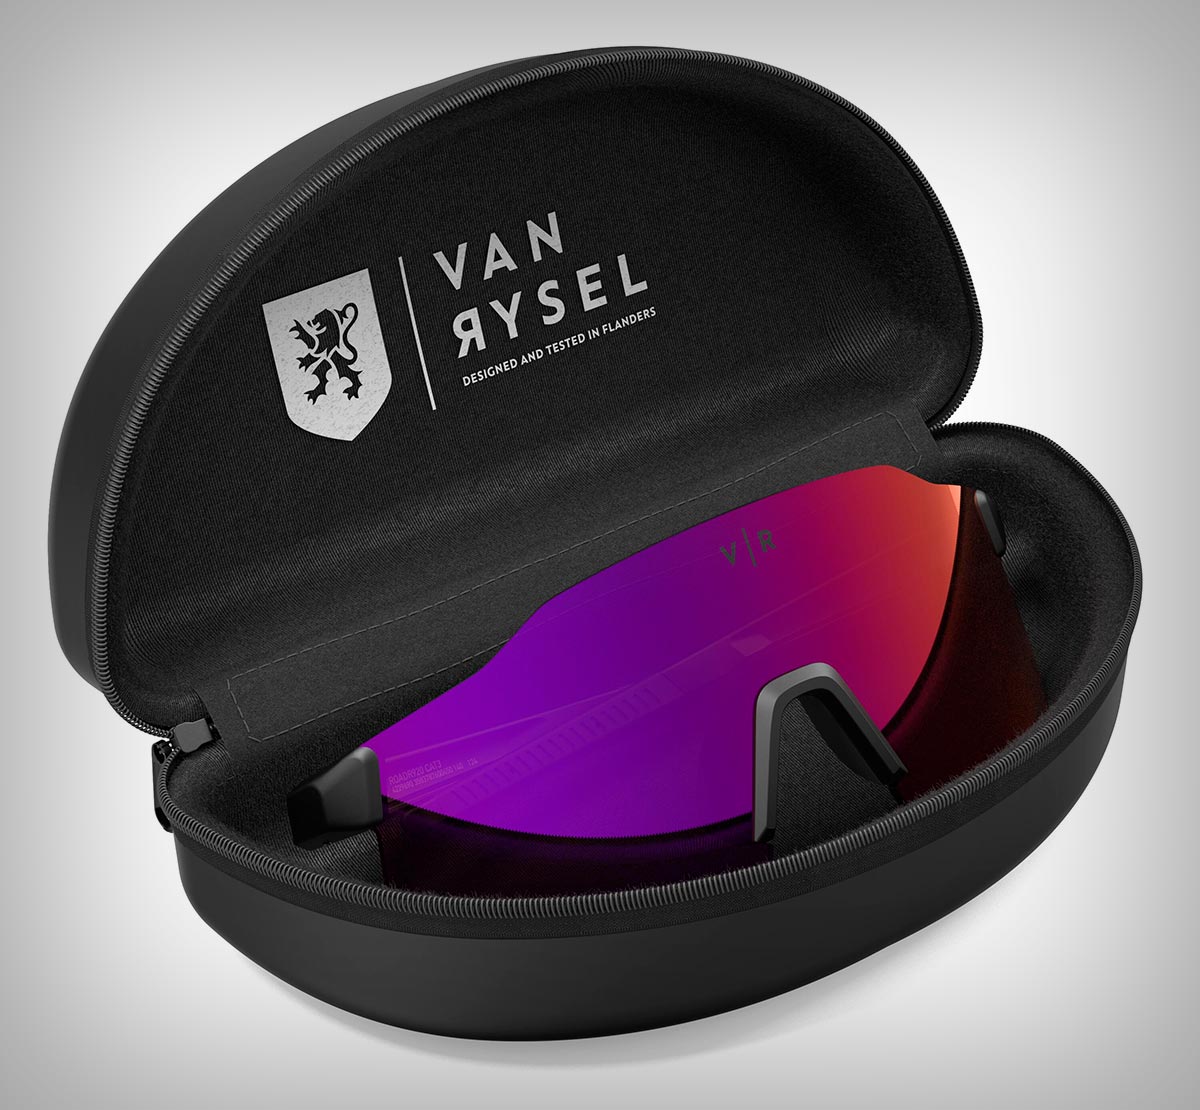 Van Rysel Roadr 920, unas gafas ultraligeras de diseño envolvente sin montura a precio sin igual